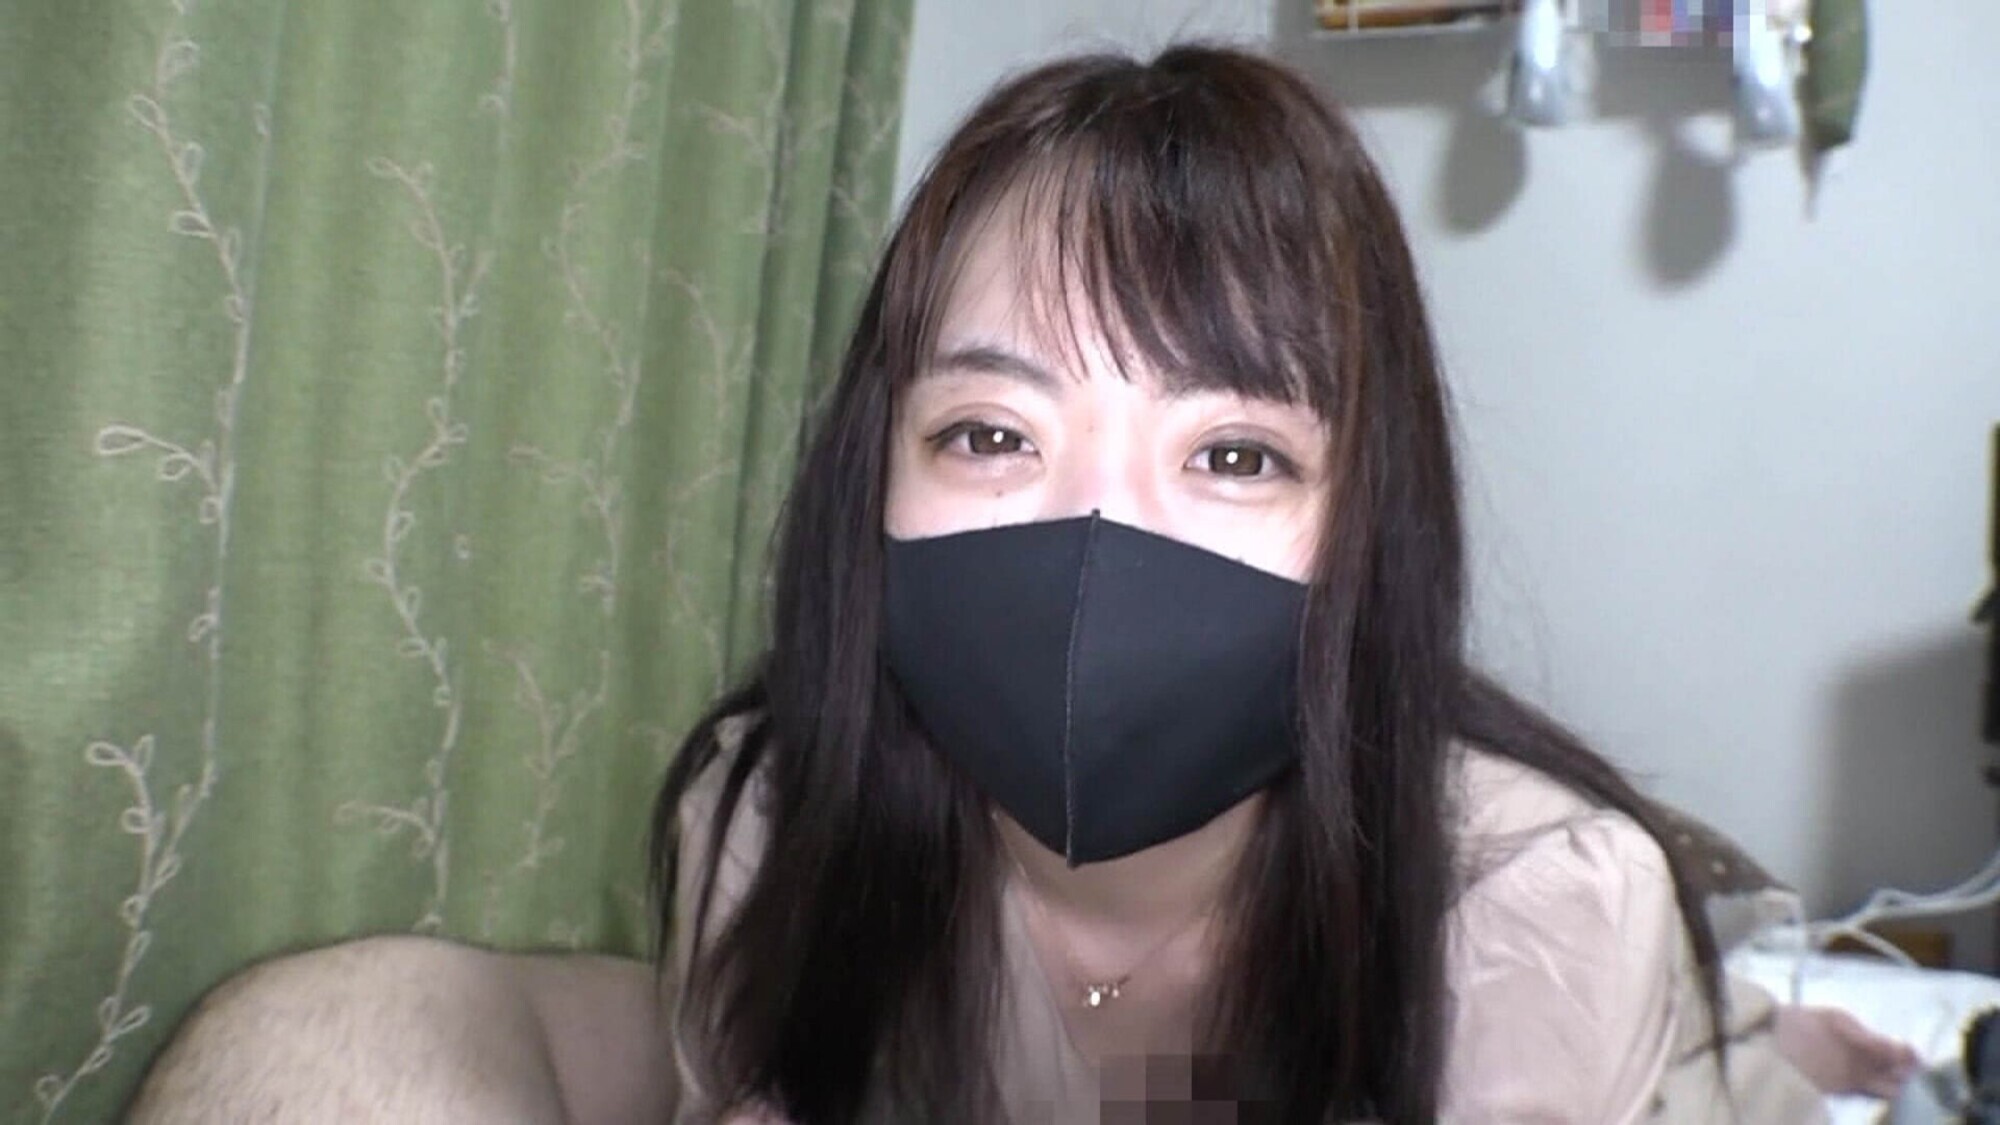 マスク着用を条件にエッチな撮影を了承してくれた普通の女の子4時間SP 画像1